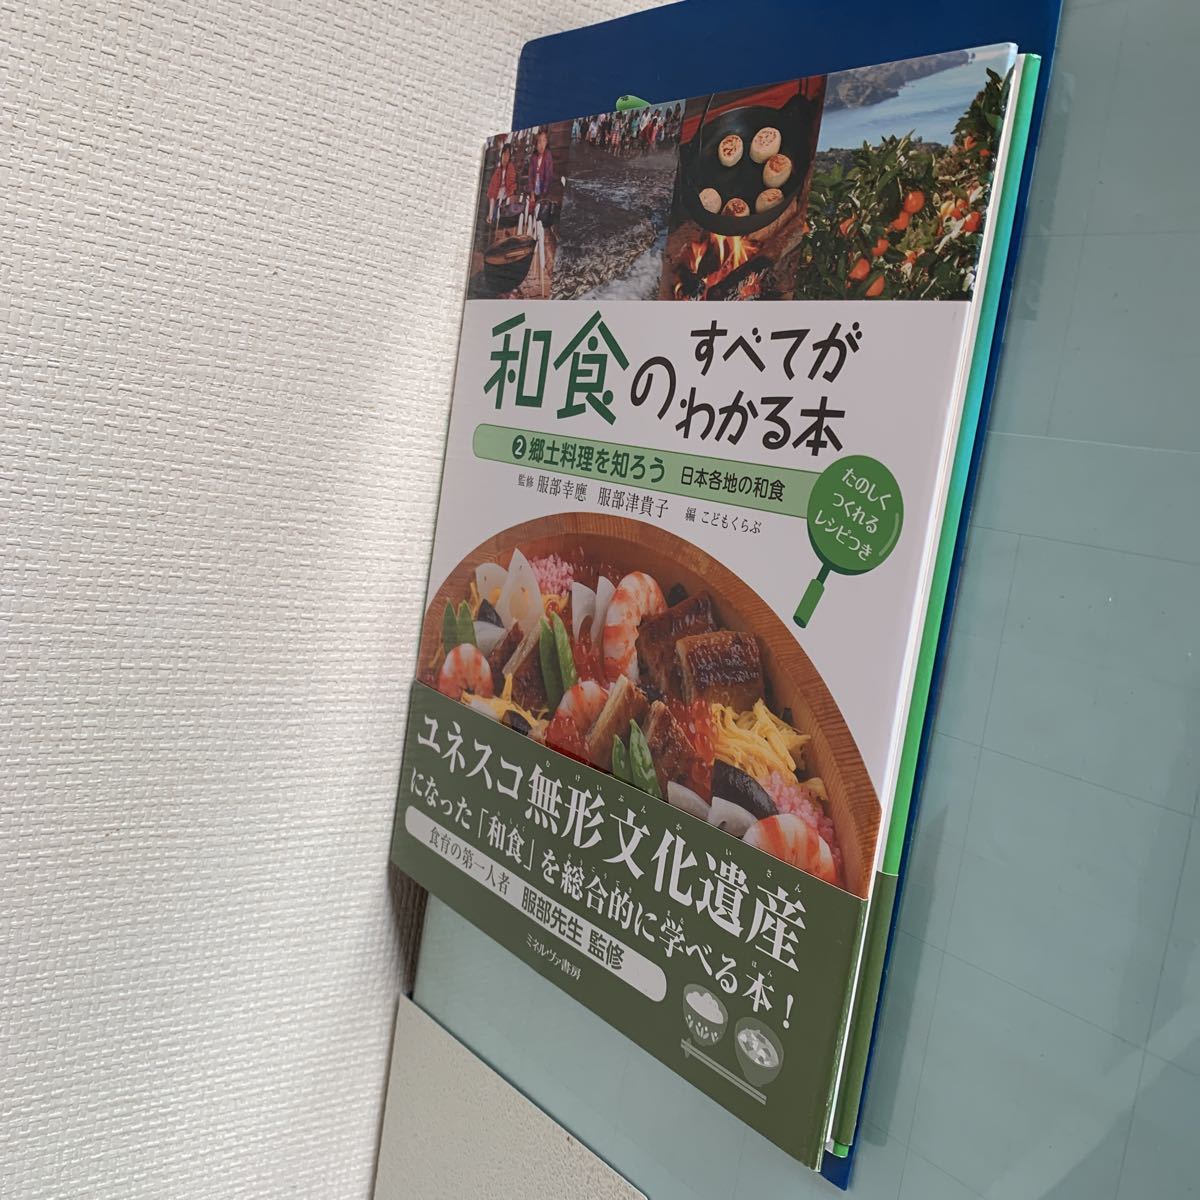  японская кухня. все . понимать книга@(2). земля кулинария ....- Япония повсеместный японская кухня Hattori .. Hattori Цу ..(..)......( сборник )mi фланель va книжный магазин 